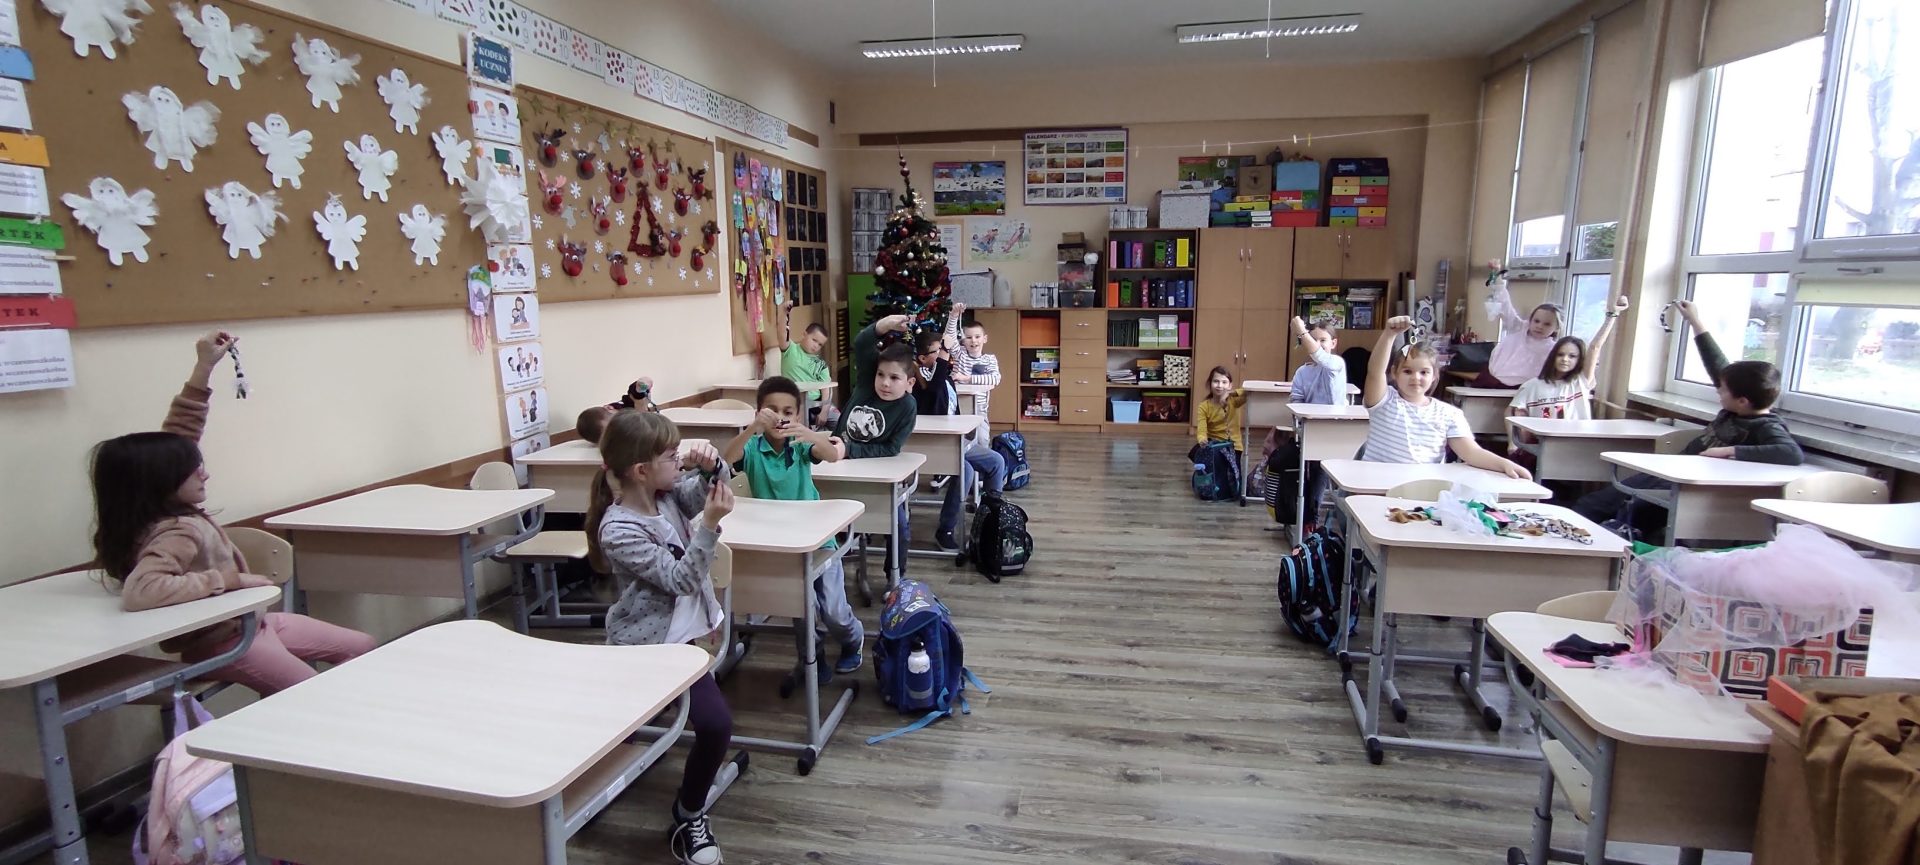 Uczniowie klasy 2a w sali lekcyjnej siedzący w ławkach. Na rękach mają zawiązane własnoręcznie wykonane bransoletki.